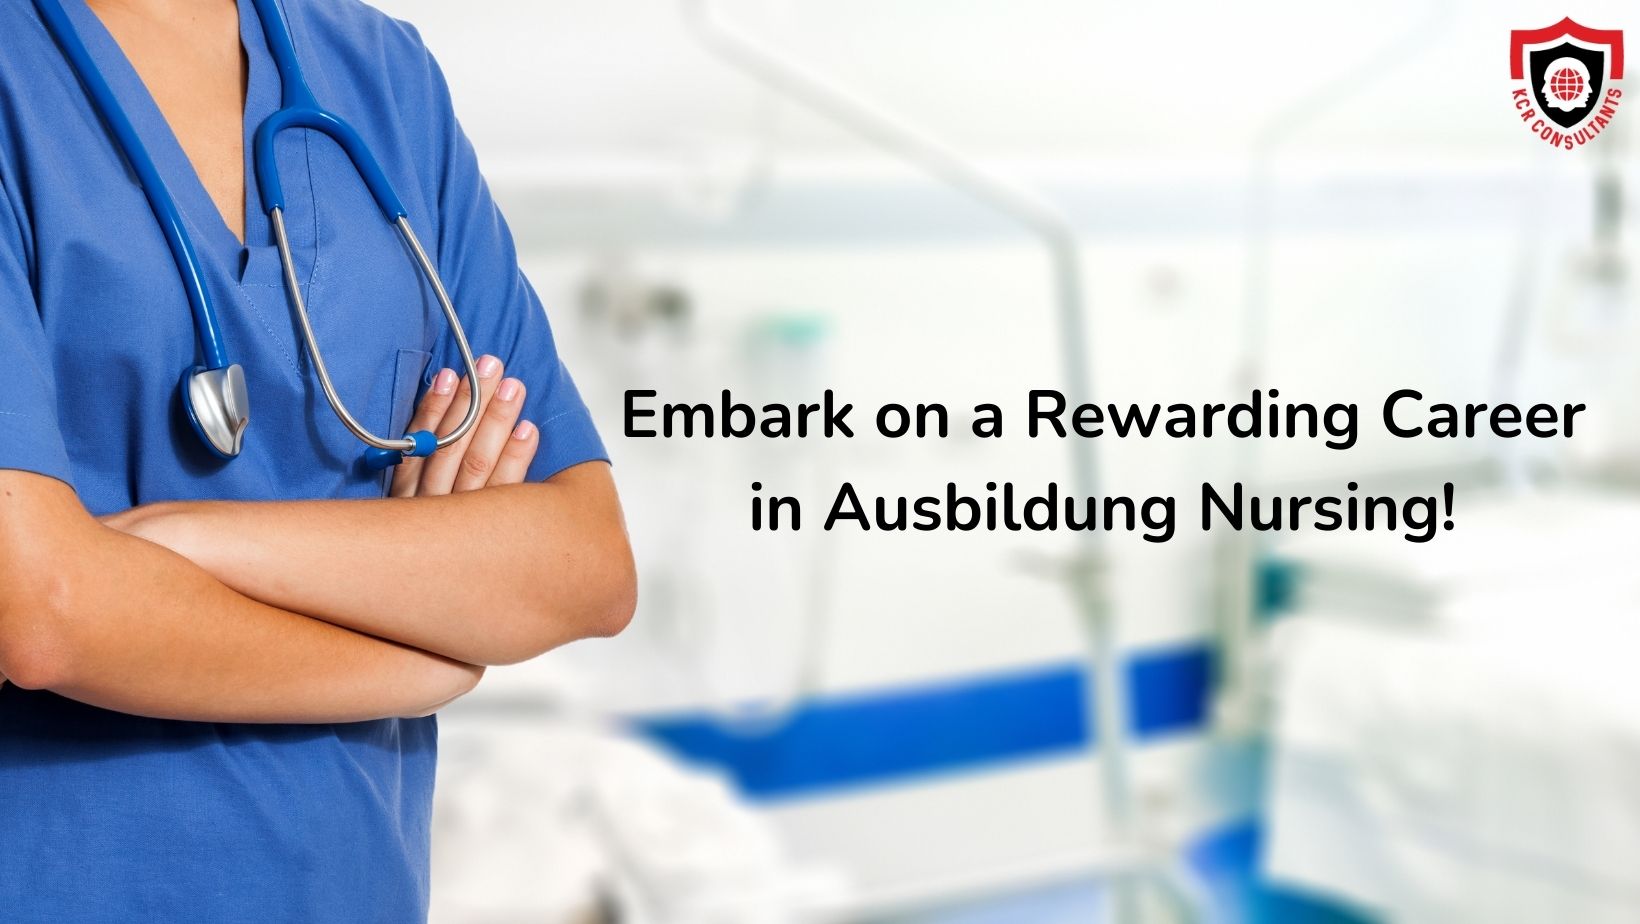 Ausbildung Nursing - KCR CONSULTANTS - Rewarding Career in nursing in Germany